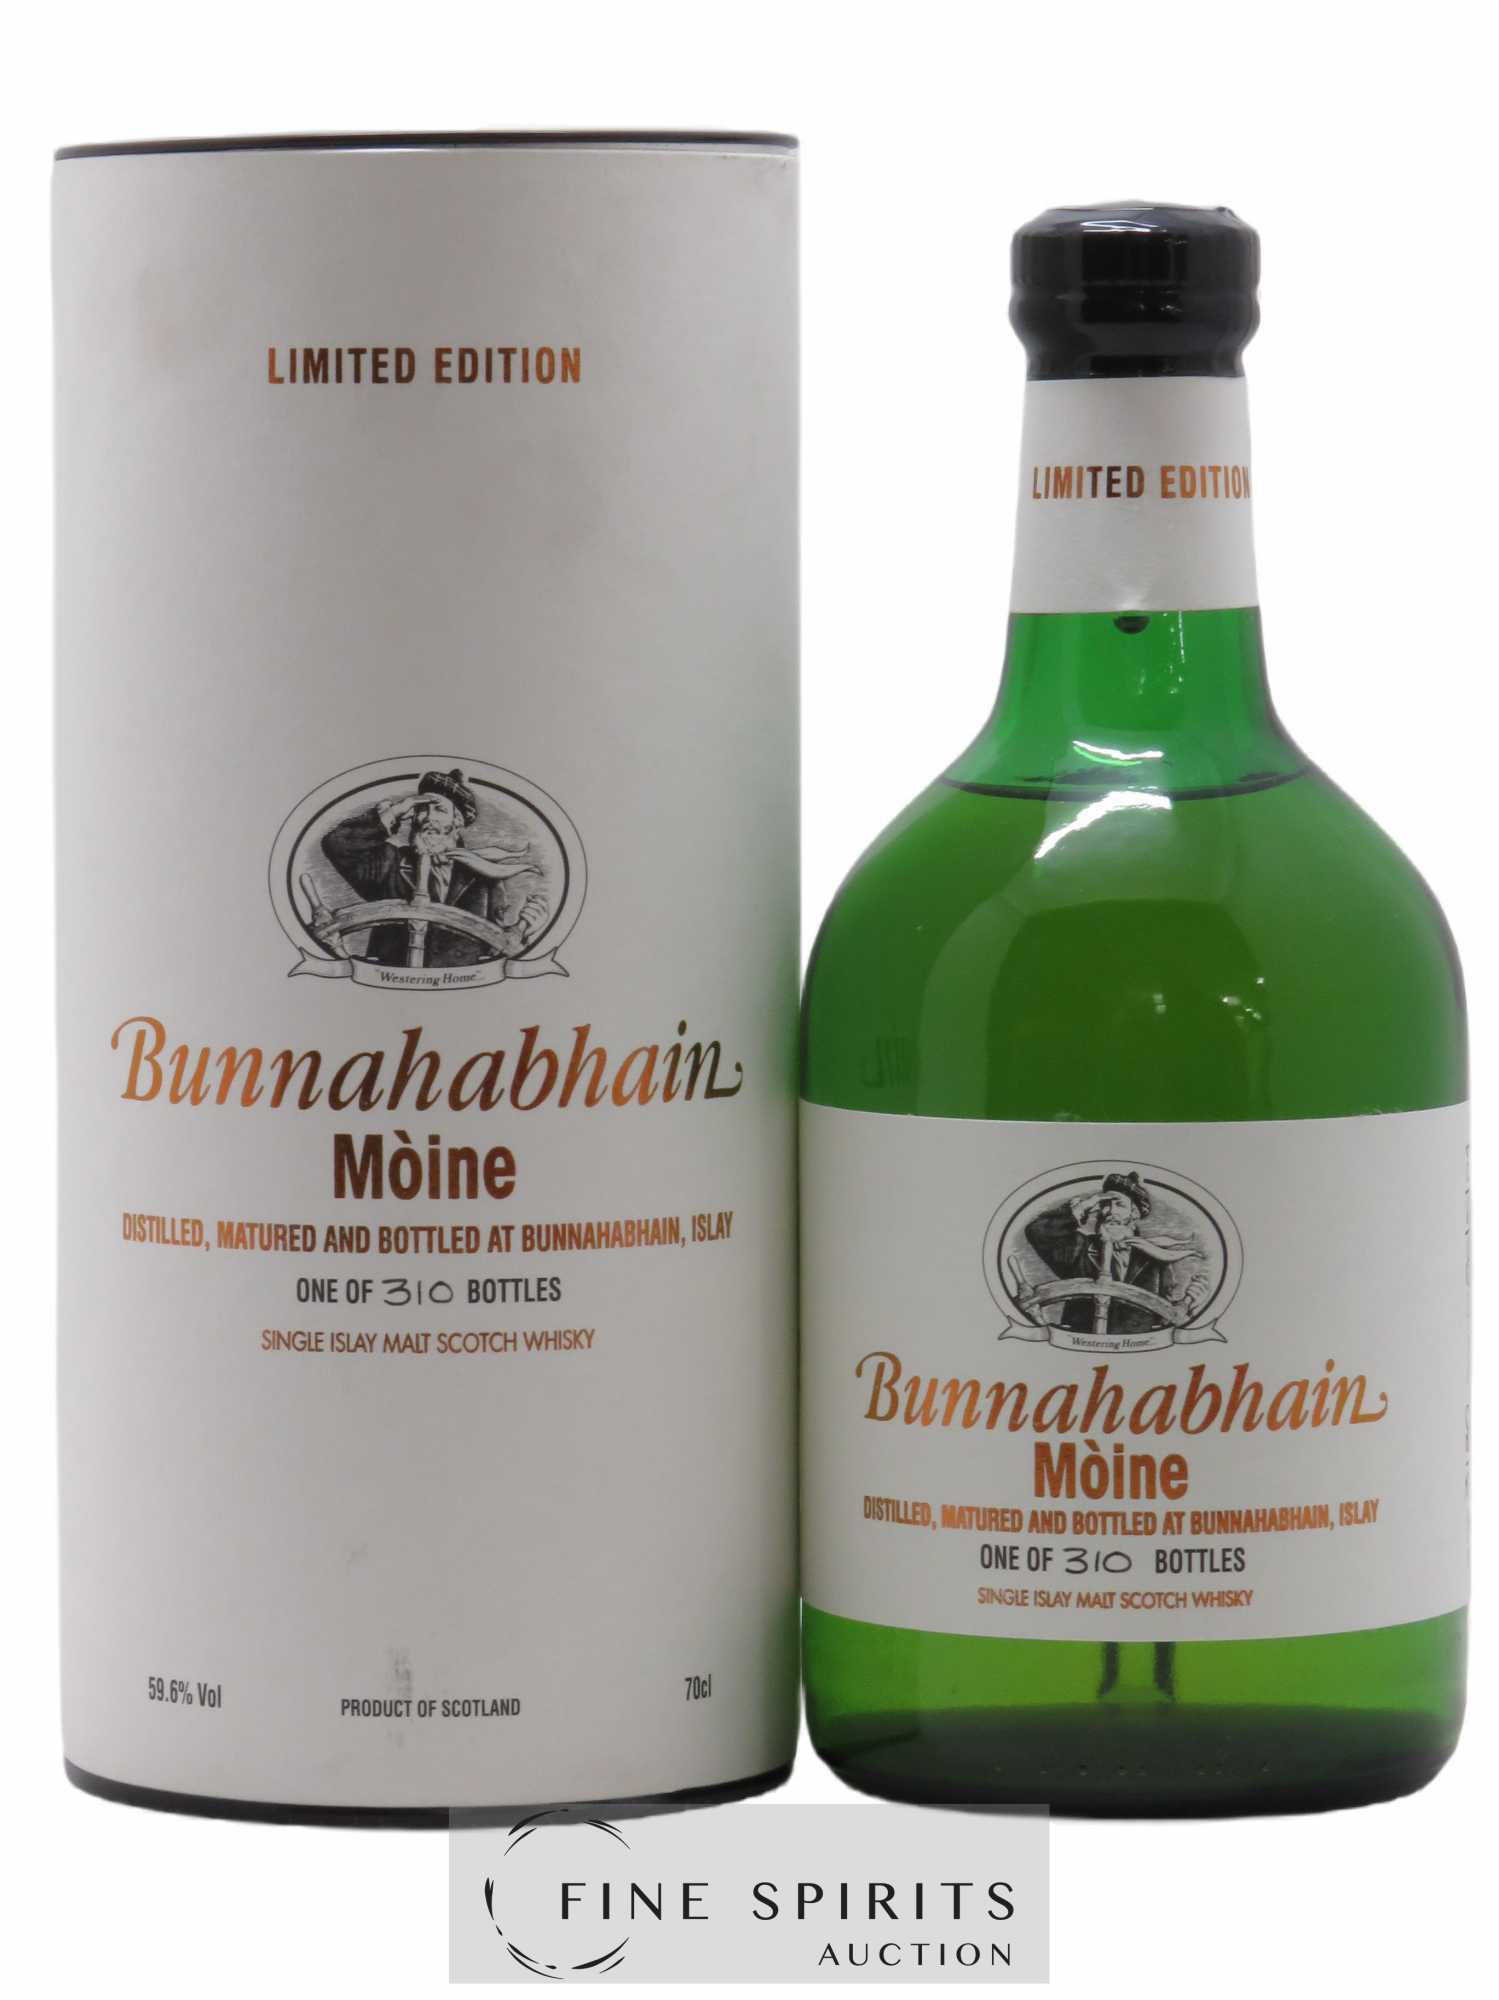 Bunnahabhain Of. Single Cask n°3180 Limited Edition 310 Bottles Moine